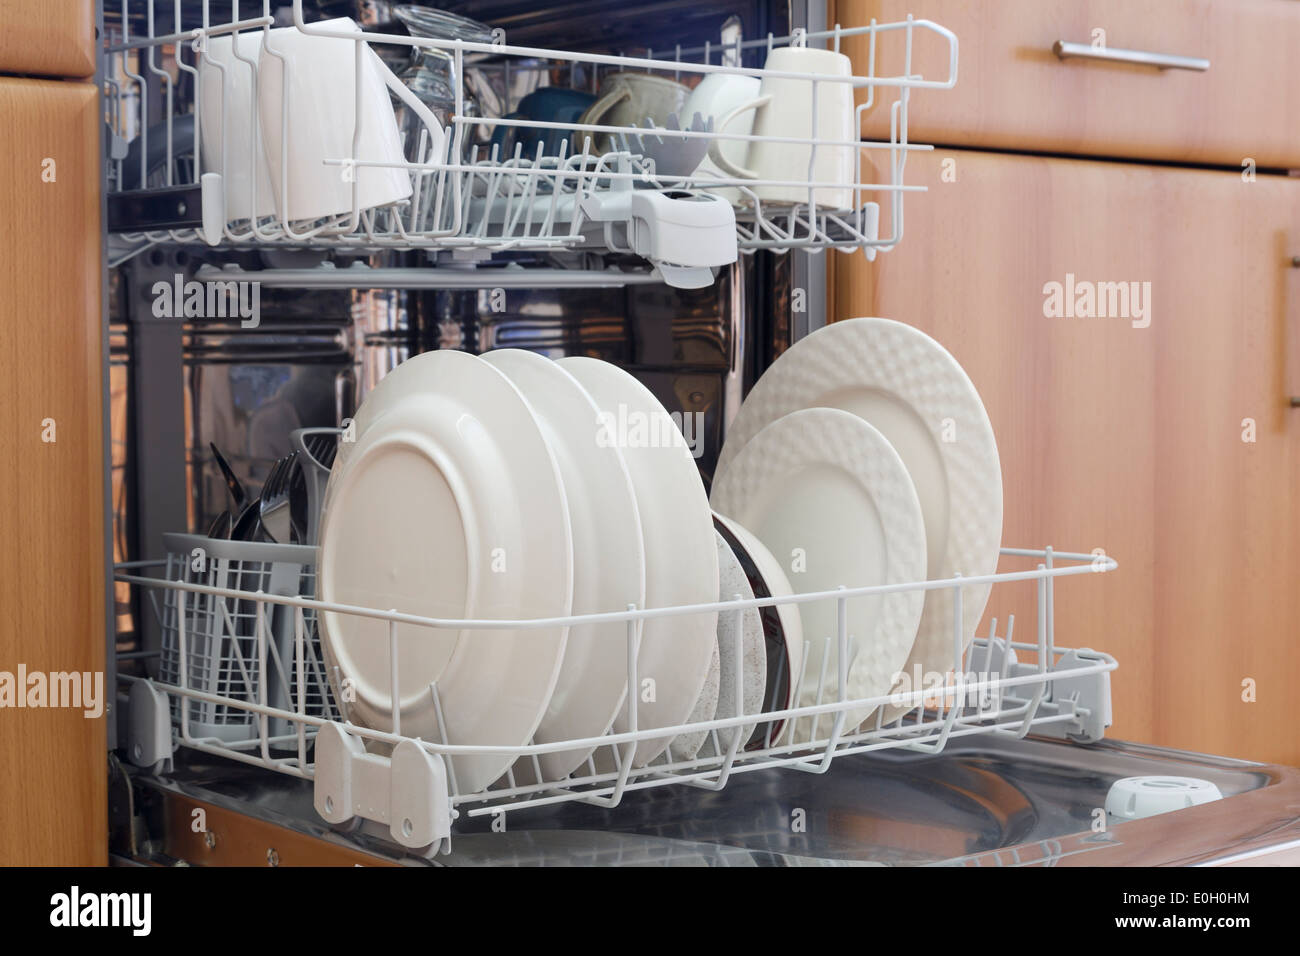 Lave-vaisselle équipée ouverte avec lave vaisselle propre dans une cuisine. Royaume-uni, Angleterre Banque D'Images